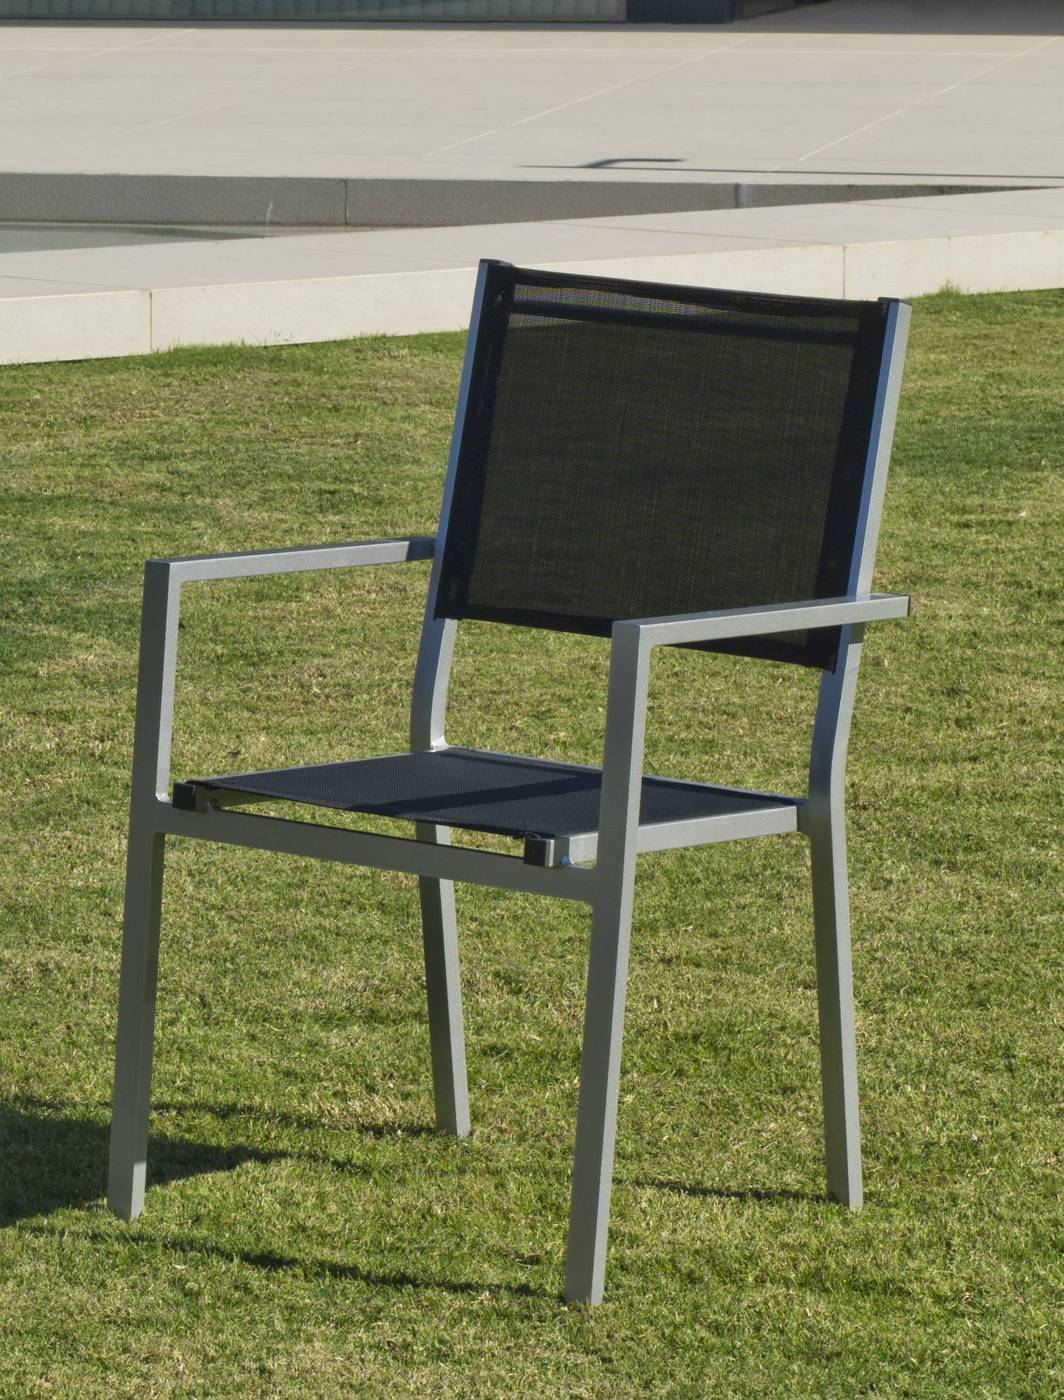 Set Aluminio Baracoa-Córcega 100-4 - Moderno conjunto de aluminio luxe: Mesa de comedor poligonal de 100 cm. + 4 sillones de textilen. Disponible en color blanco, antracita, champagne, plata o marrón.